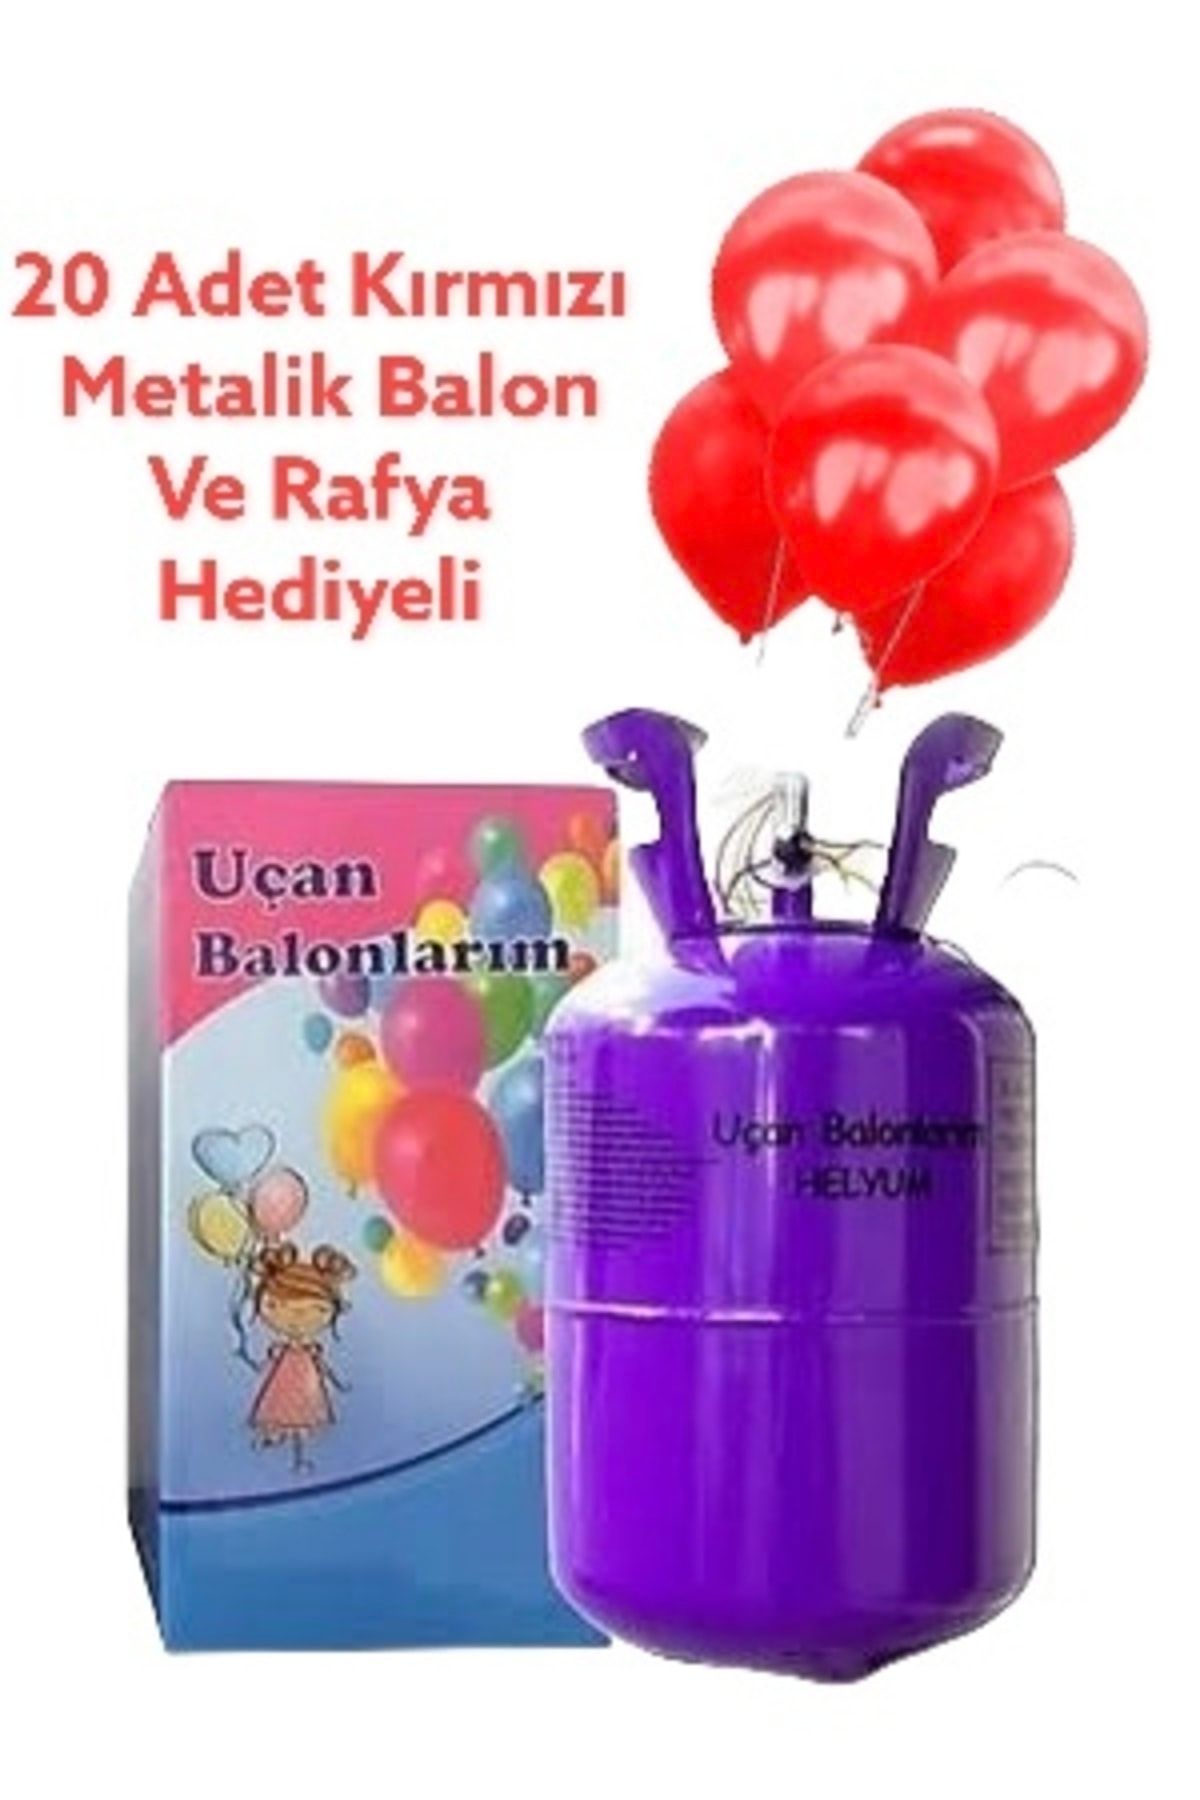 Kahramanlar Dünyası Helyum Gazı Kullan At Helyum Tüpü (20 Adet Kırmızı Metalik Balon Ve Rafya Hediyeli)